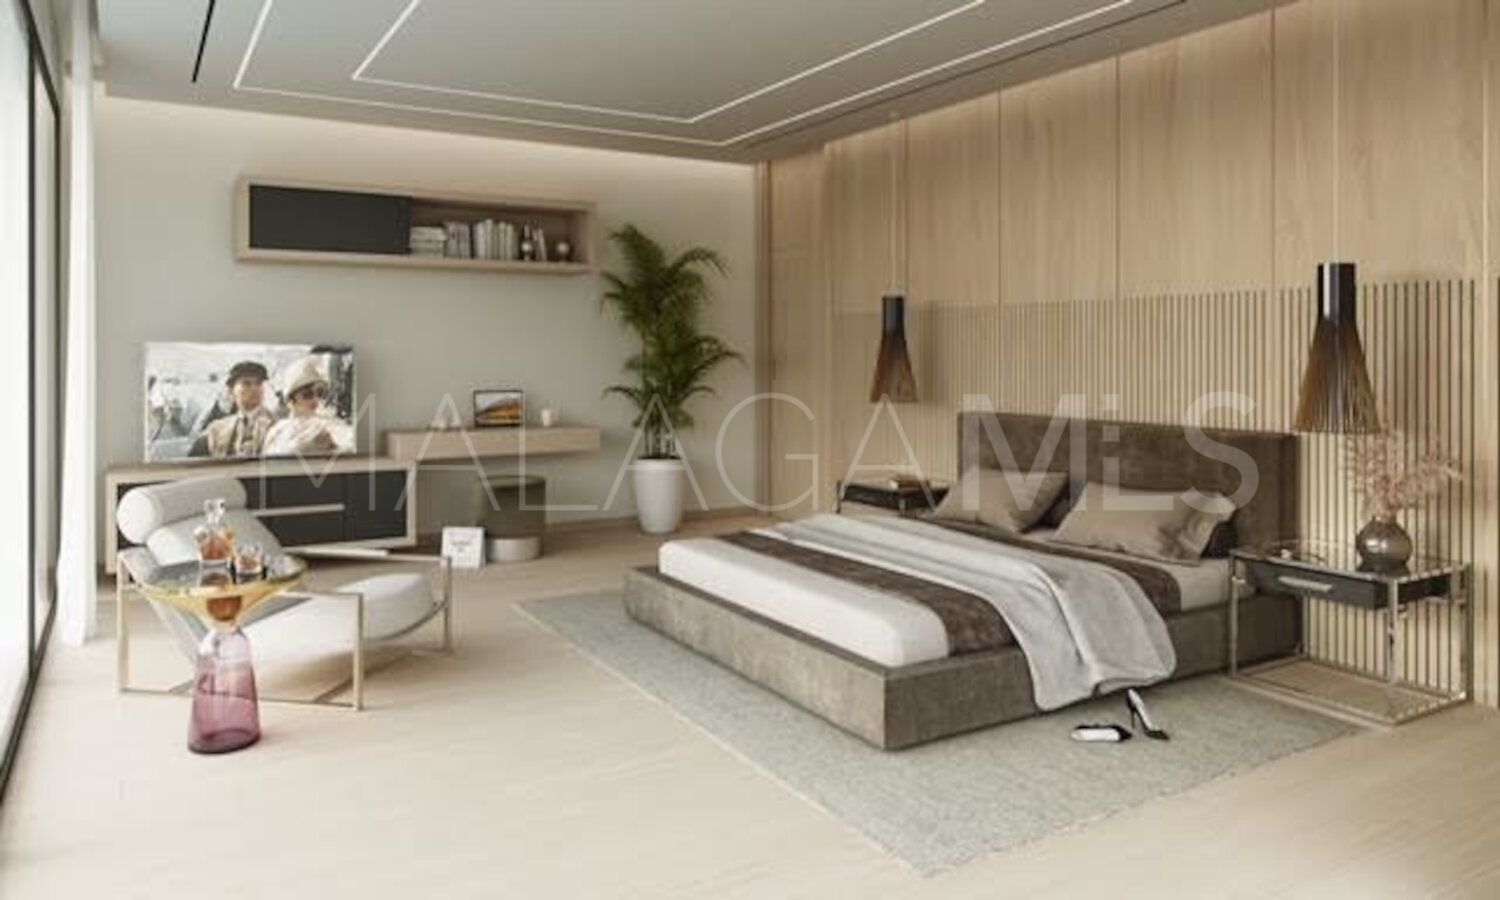 For sale Cortijo Nagüeles villa with 7 bedrooms